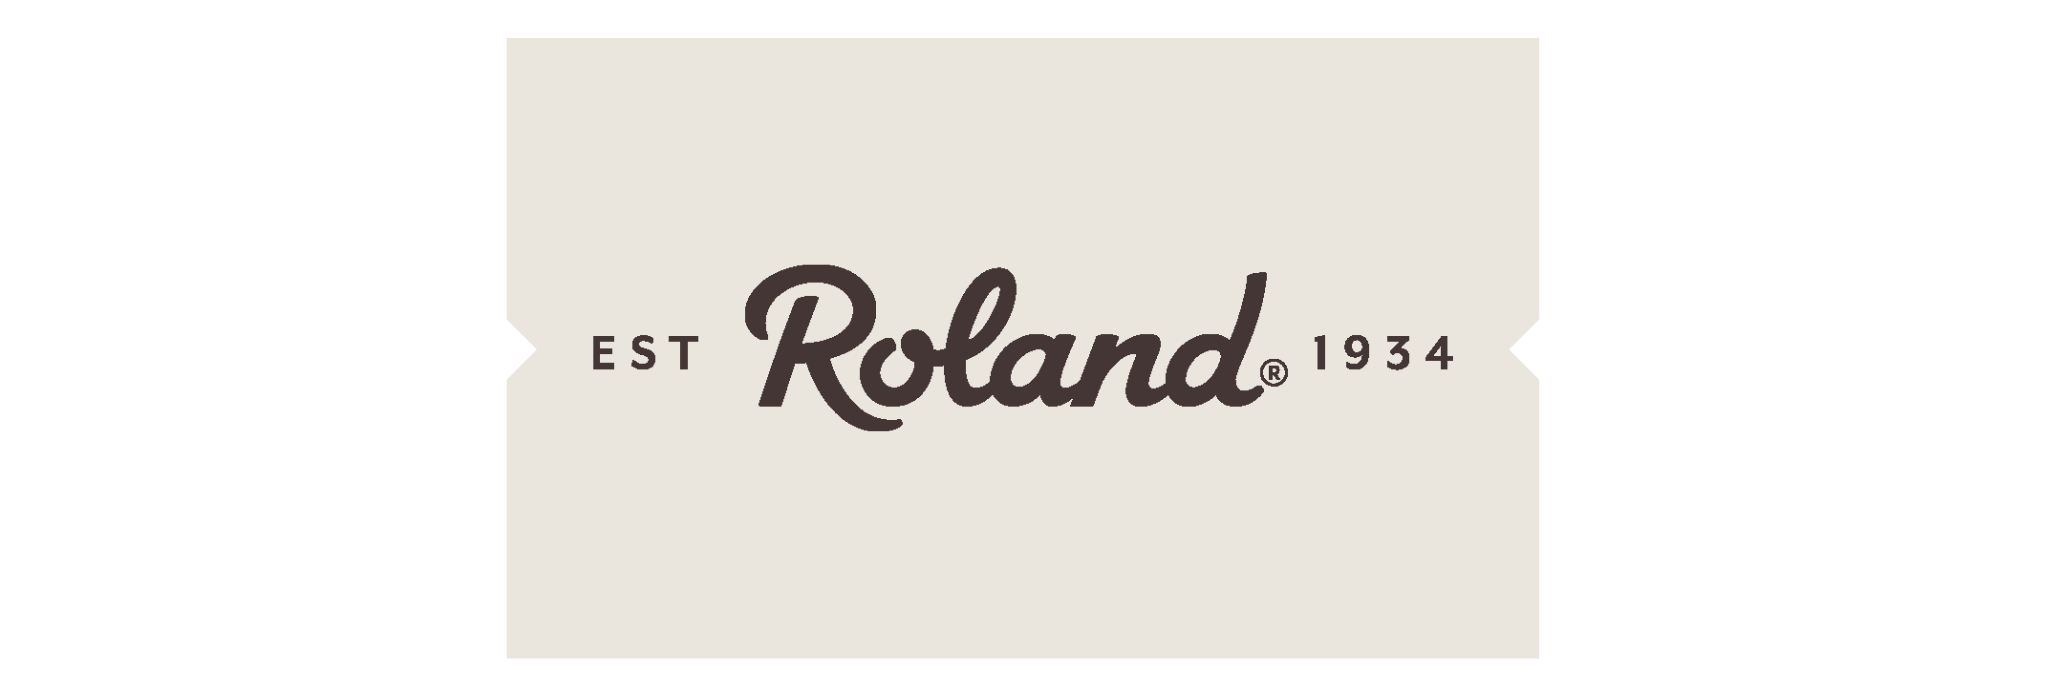 Roland Foods Logo